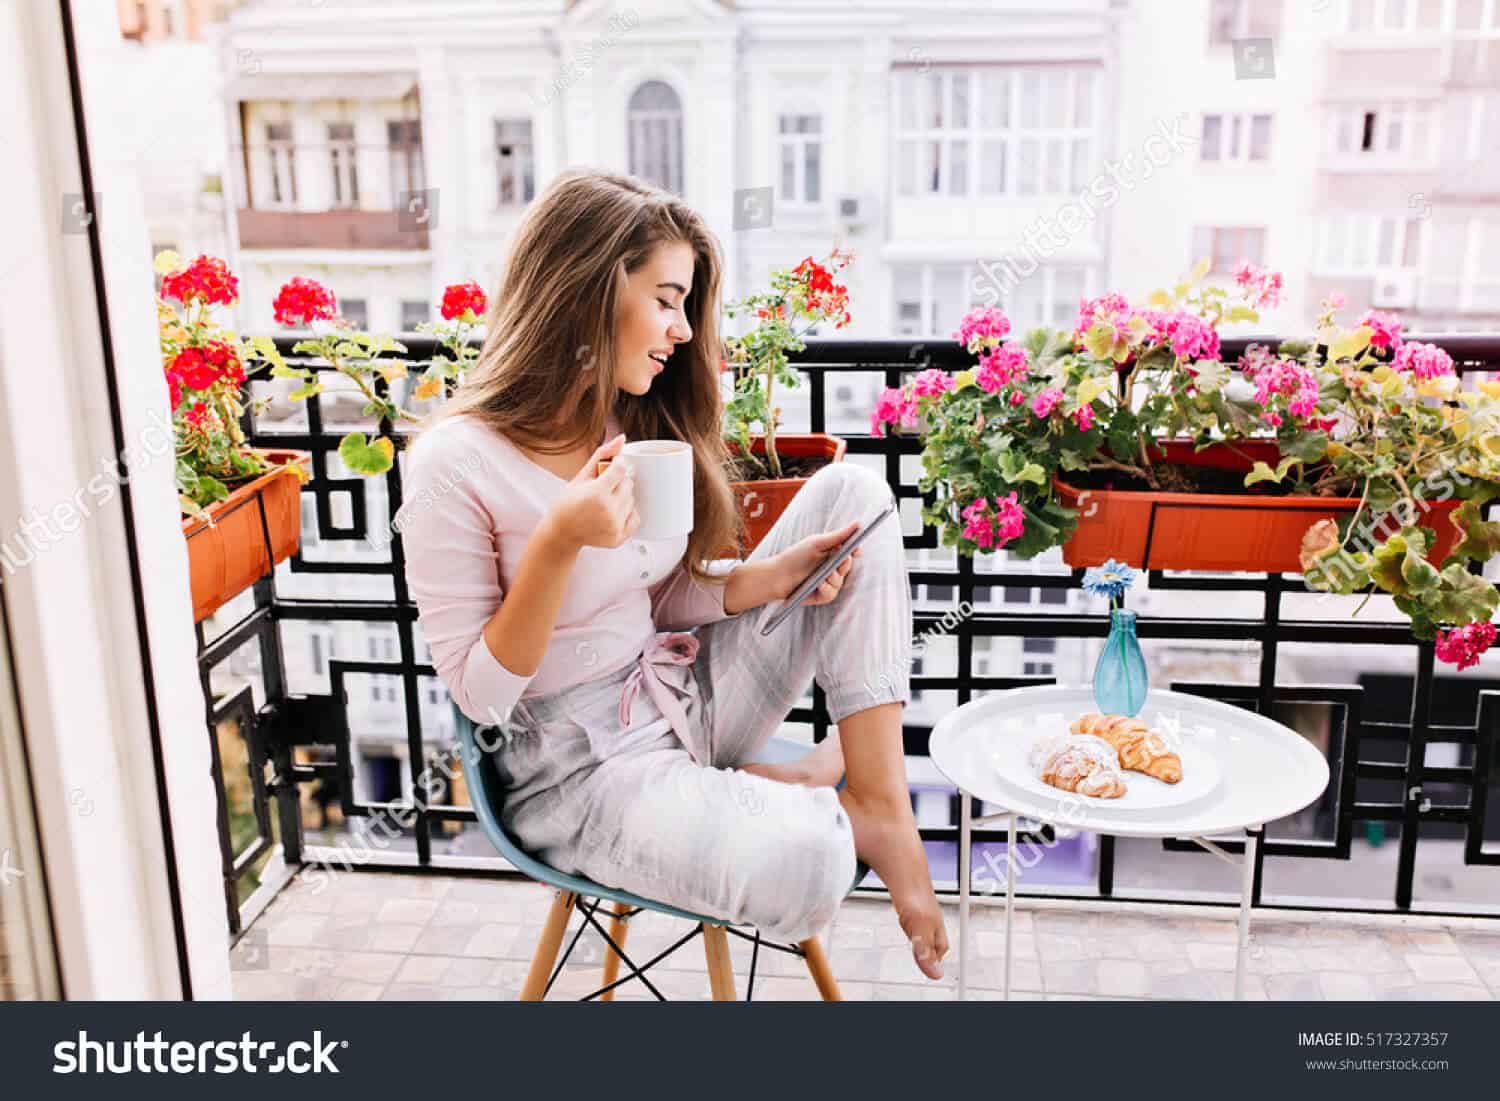 240 ngàn hình ảnh cô gái trẻ Châu Âu chất lượng cao trên Shutterstock